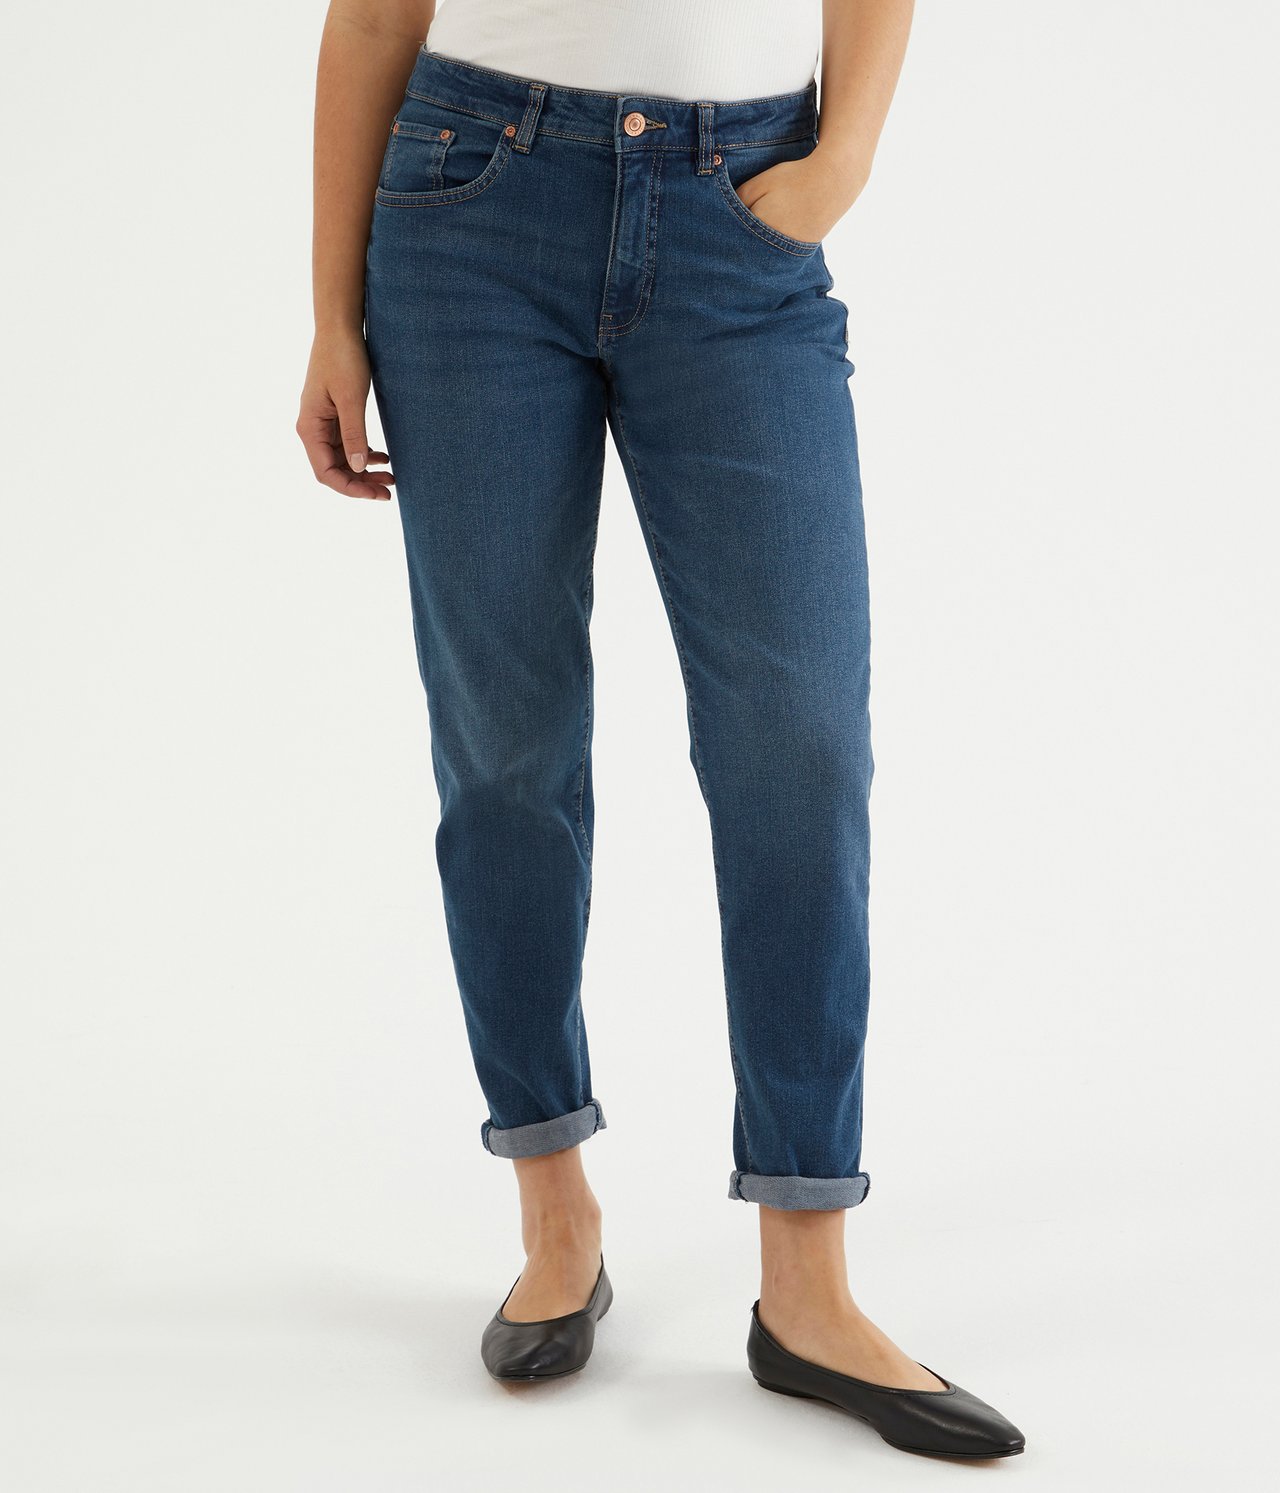 Lauren girlfriend jeans - Mörk denim - 2